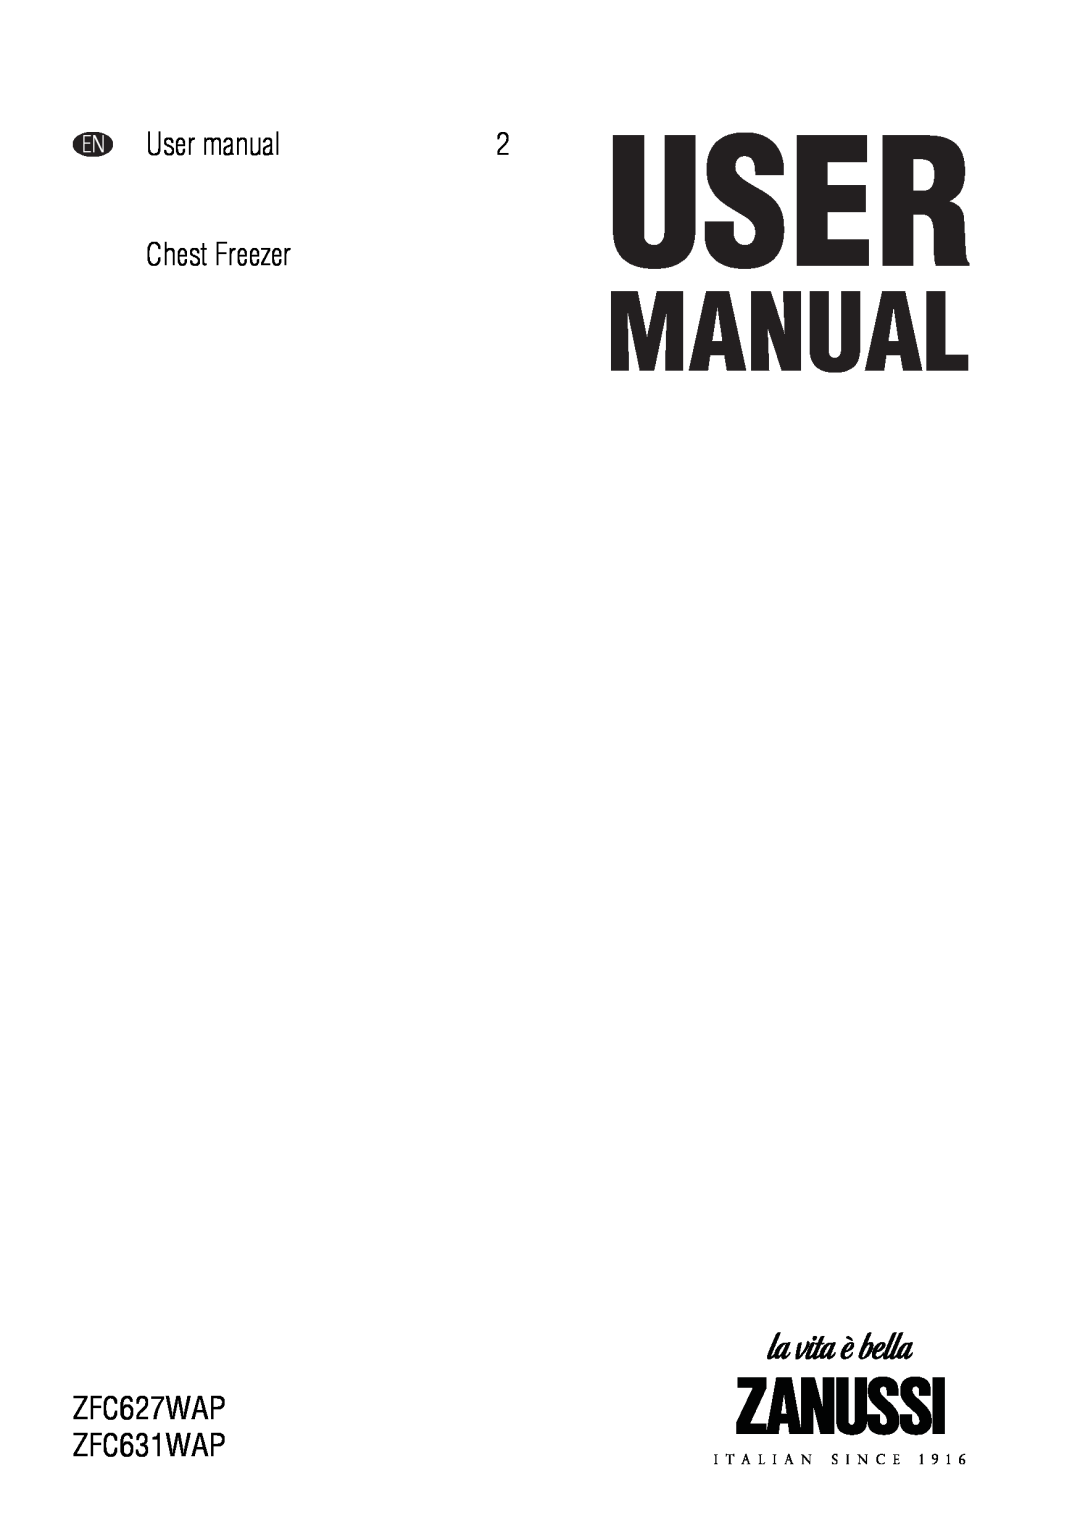 Zanussi user manual Chest Freezer, ZFC627WAP ZFC631WAP 